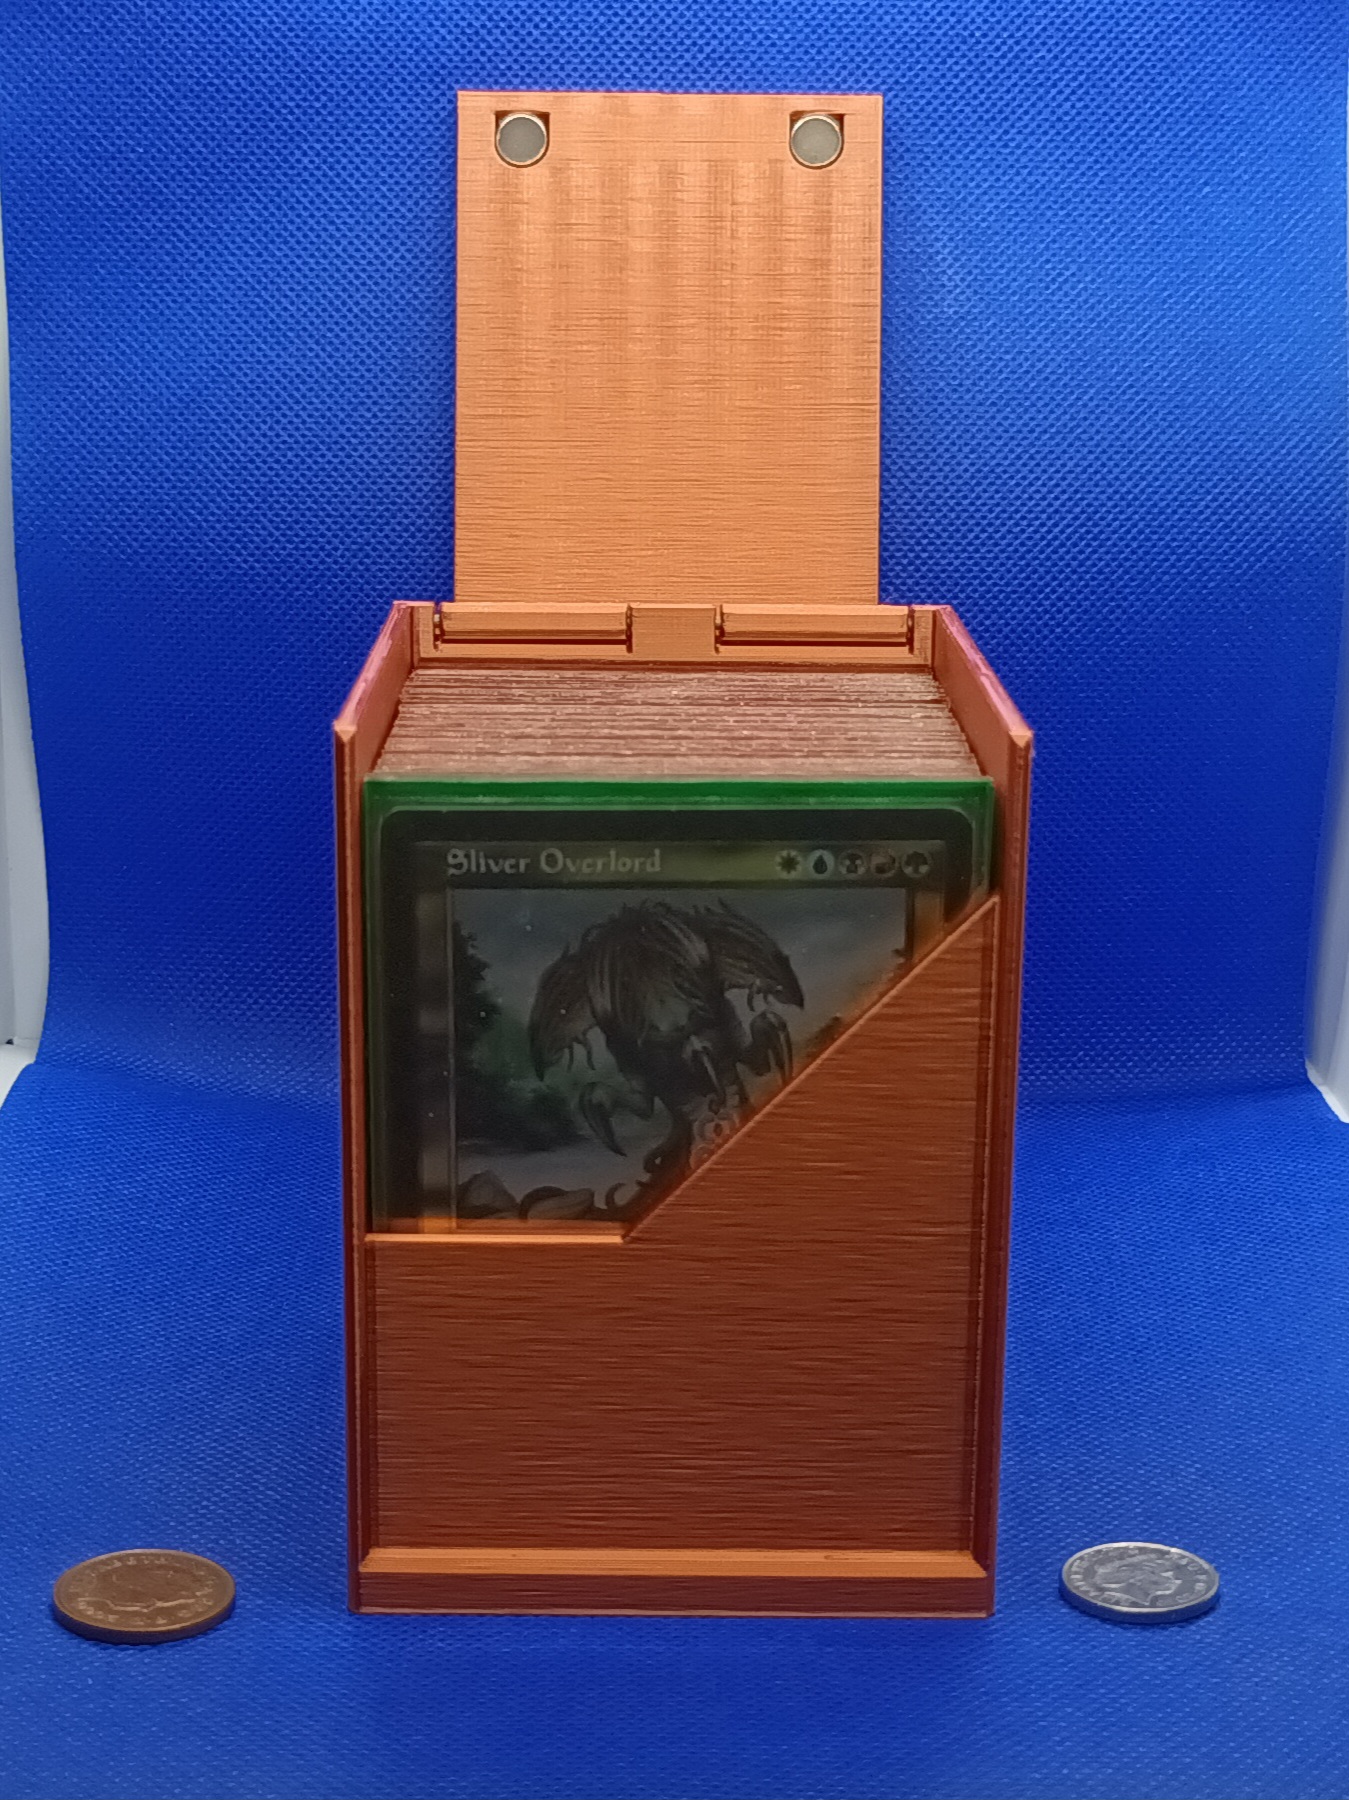 100+ Ultimate Card Box v4 (Magnetised)_WUBRG